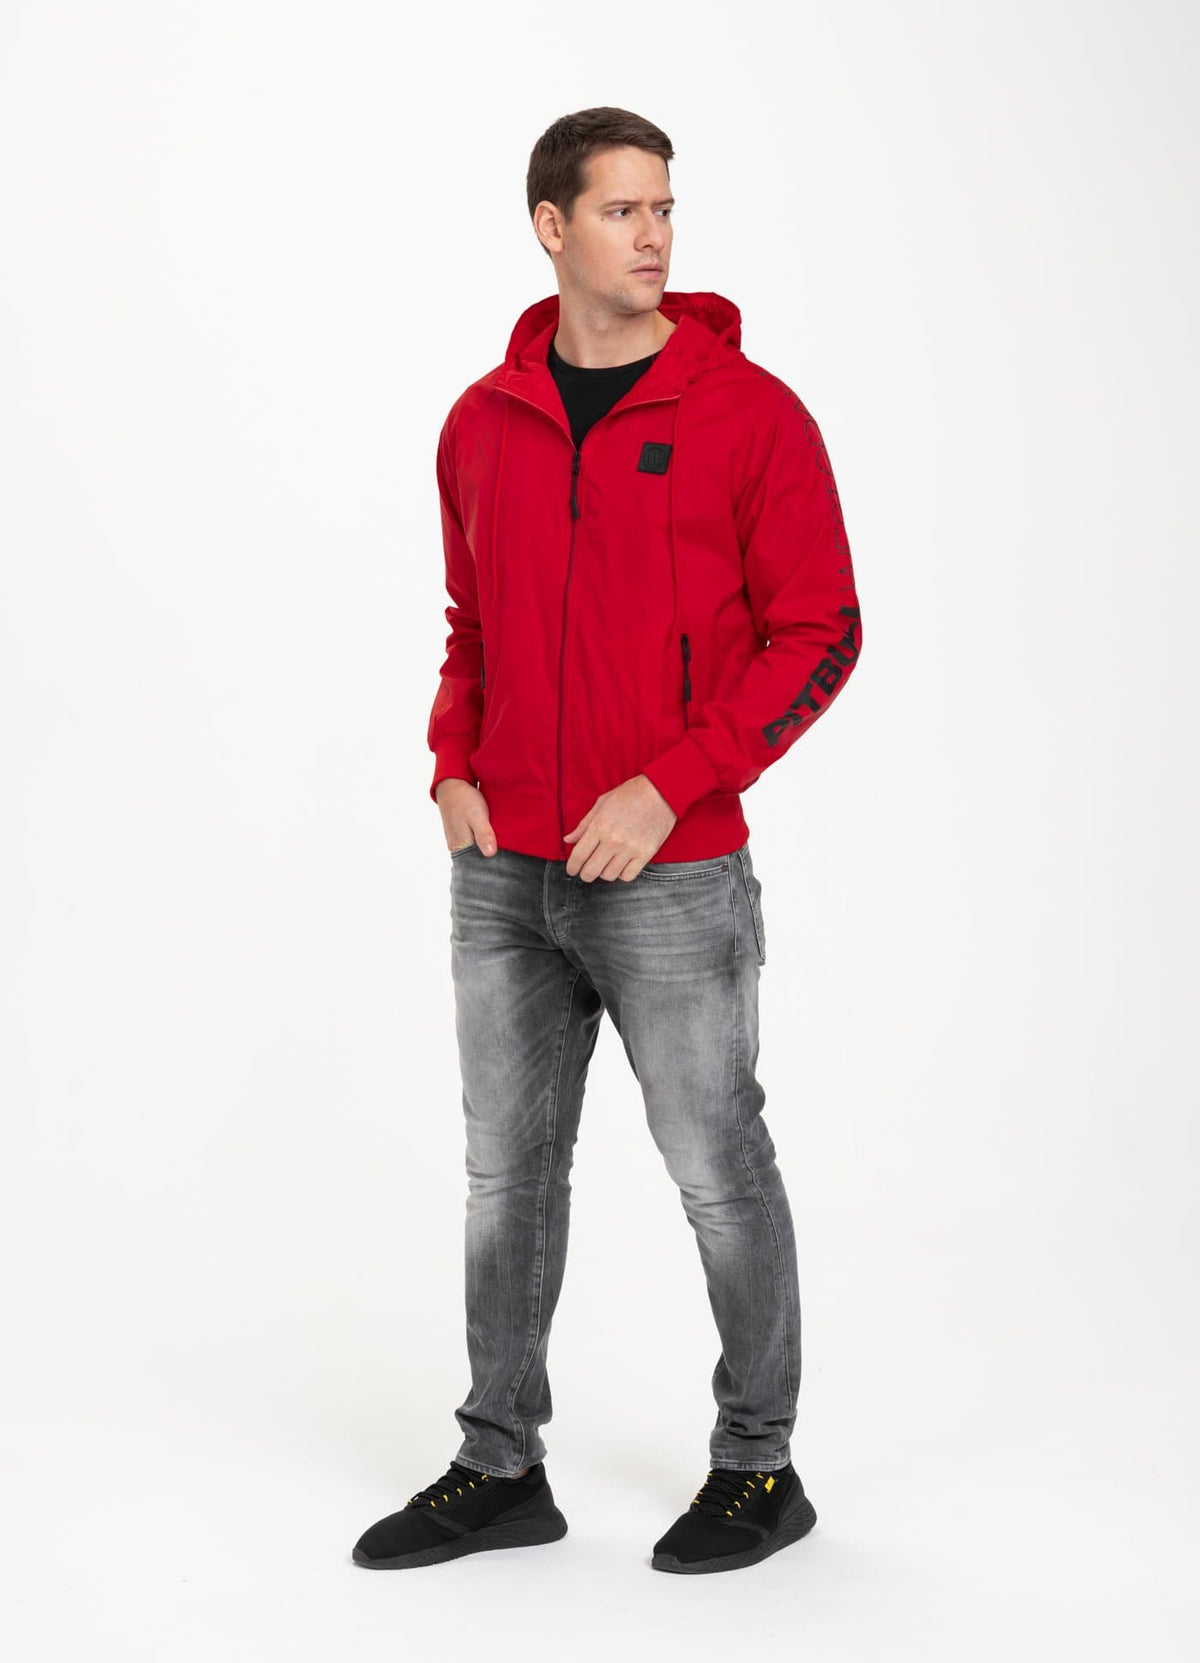 ATHLETIC Sleeve Jacket Red - Pitbull West Coast International Store 